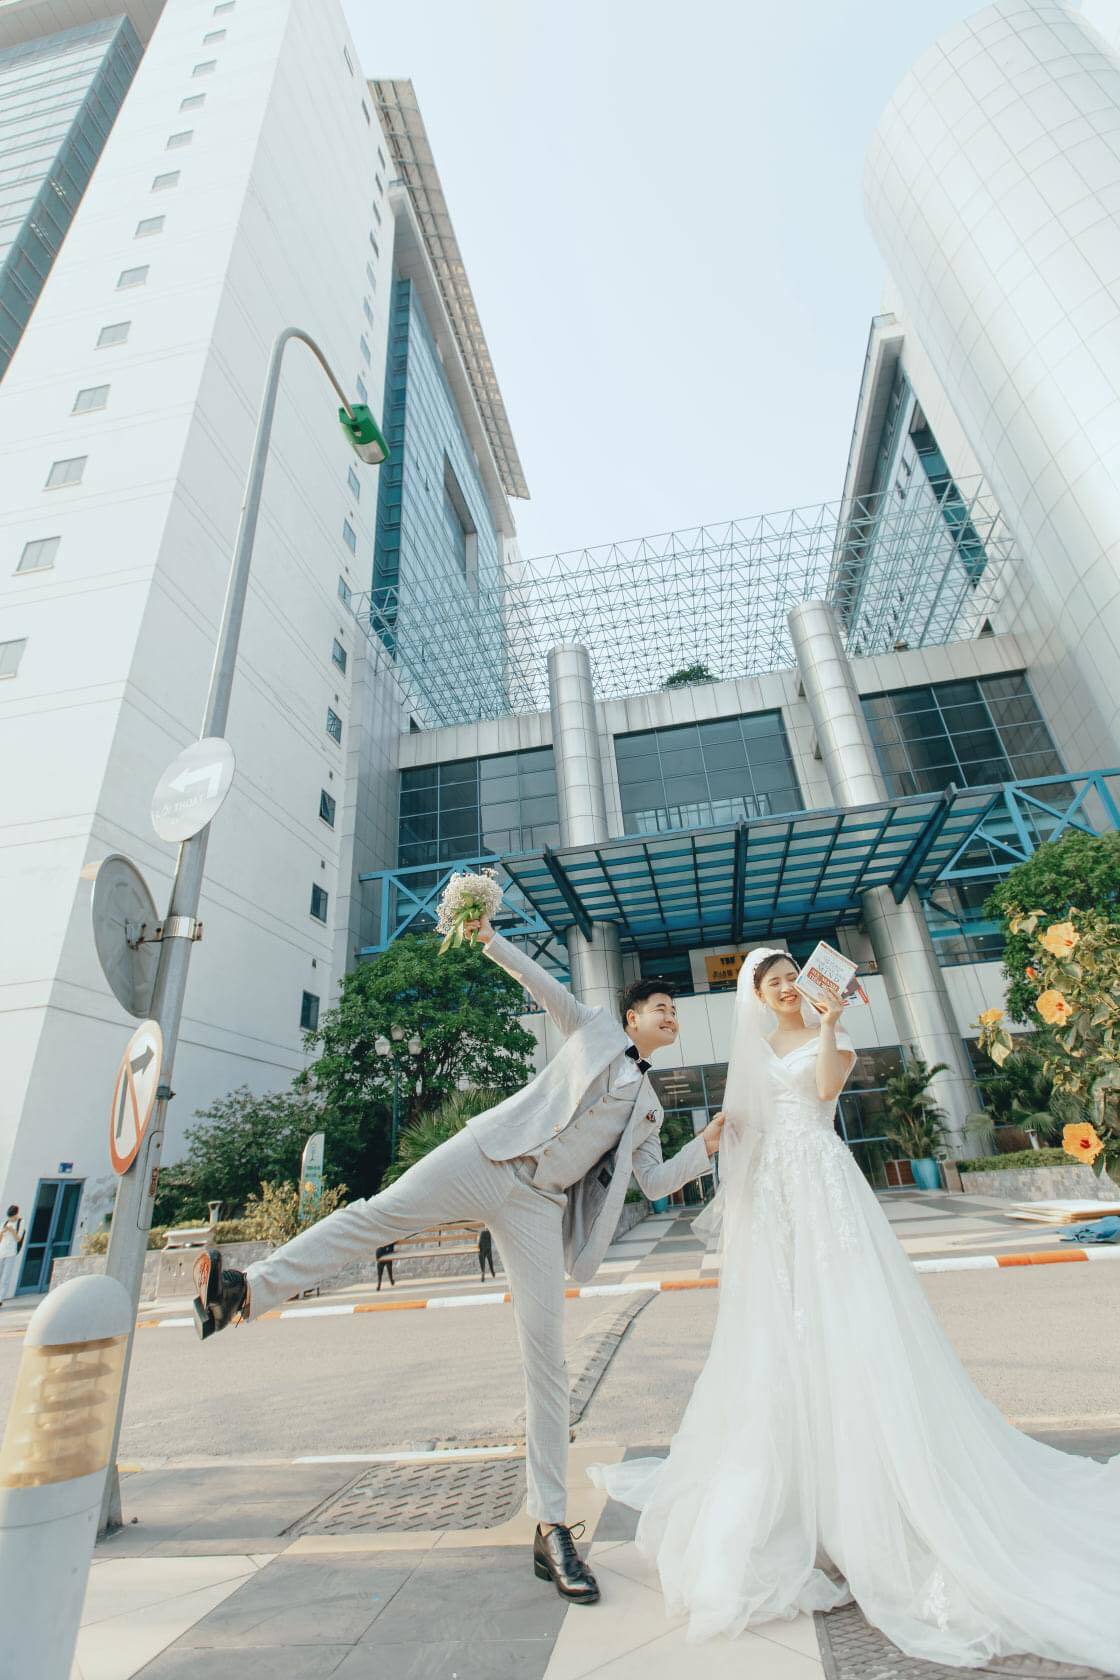 Chuyện tình ngọt như phim của cặp đôi chụp ảnh cưới tại ĐH Kinh tế Quốc dân